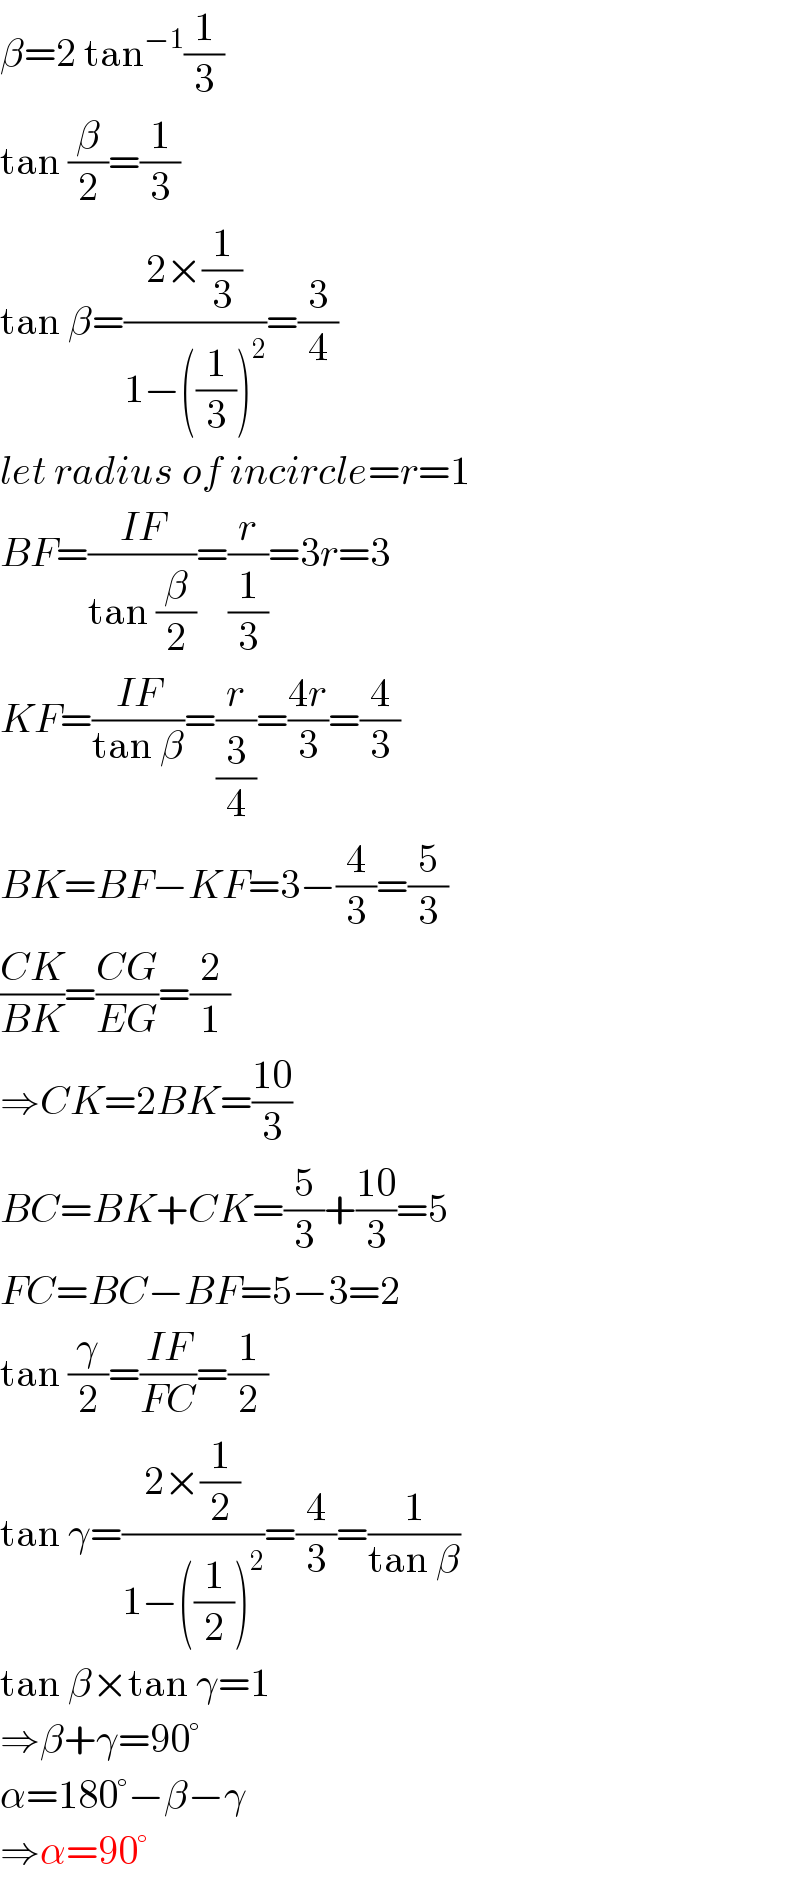 β=2 tan^(−1) (1/3)  tan (β/2)=(1/3)  tan β=((2×(1/3))/(1−((1/3))^2 ))=(3/4)  let radius of incircle=r=1  BF=((IF)/(tan (β/2)))=(r/(1/3))=3r=3  KF=((IF)/(tan β))=(r/(3/4))=((4r)/3)=(4/3)  BK=BF−KF=3−(4/3)=(5/3)  ((CK)/(BK))=((CG)/(EG))=(2/1)  ⇒CK=2BK=((10)/3)  BC=BK+CK=(5/3)+((10)/3)=5  FC=BC−BF=5−3=2  tan (γ/2)=((IF)/(FC))=(1/2)  tan γ=((2×(1/2))/(1−((1/2))^2 ))=(4/3)=(1/(tan β))  tan β×tan γ=1  ⇒β+γ=90°  α=180°−β−γ  ⇒α=90°  